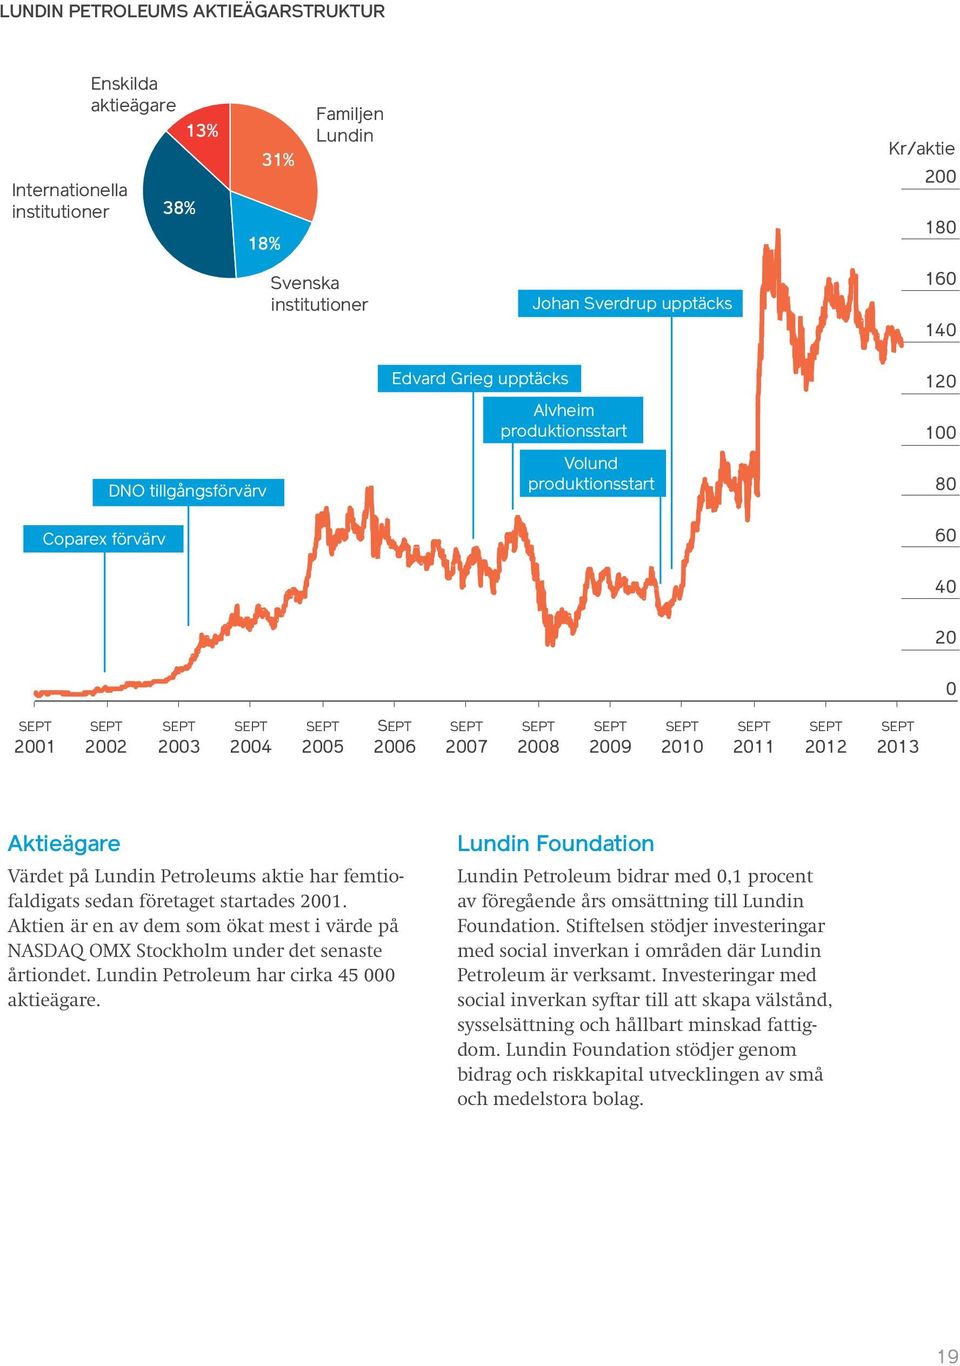 Värdet på Lundin Petroleums aktie har femtiofaldigats sedan företaget startades 2001. Aktien är en av dem som ökat mest i värde på NASDAQ OMX Stockholm under det senaste årtiondet.